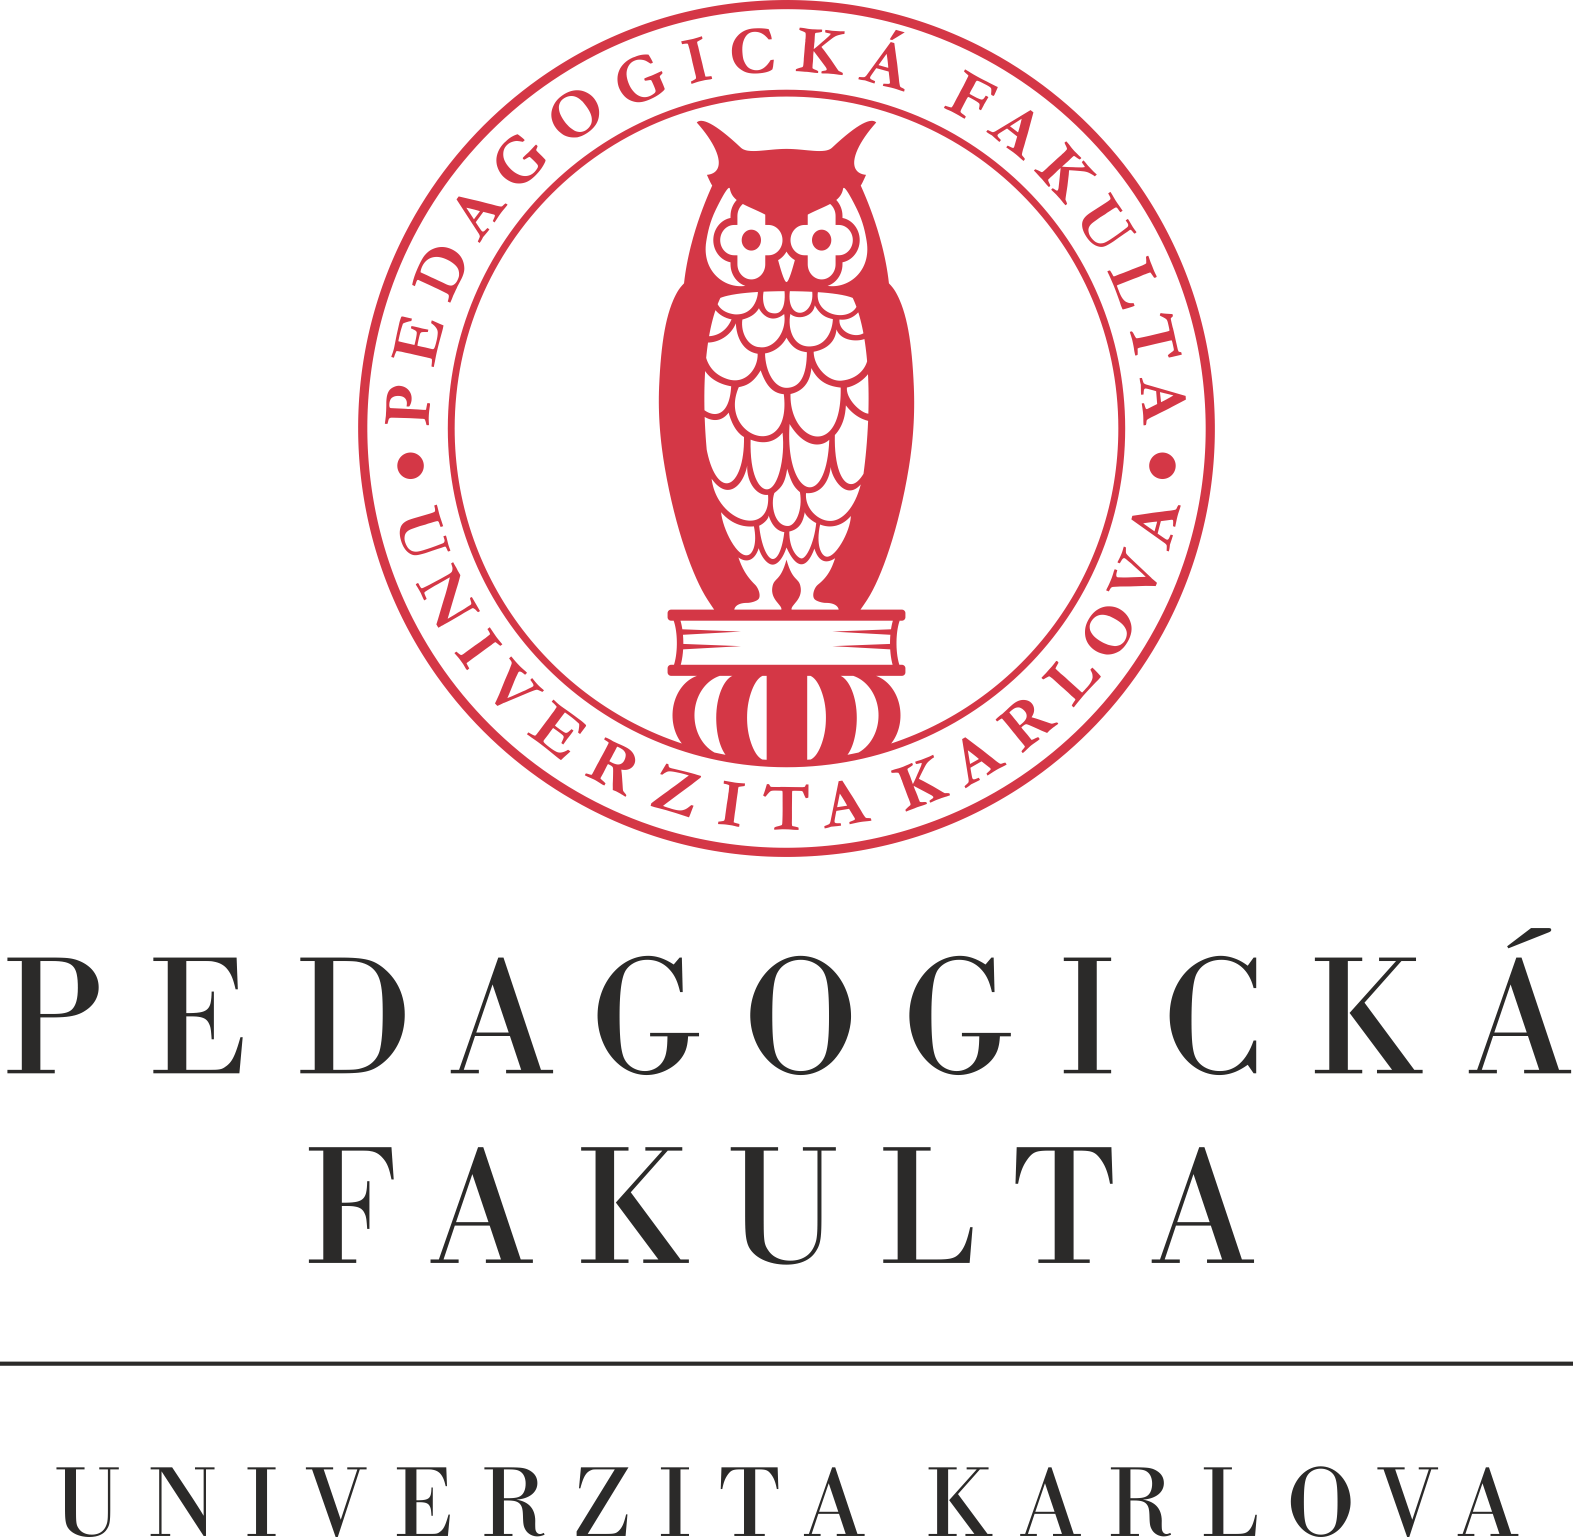 2017 11 29 04 34 10 Uk Pedf logo krivky cervene text univerzita uzitne